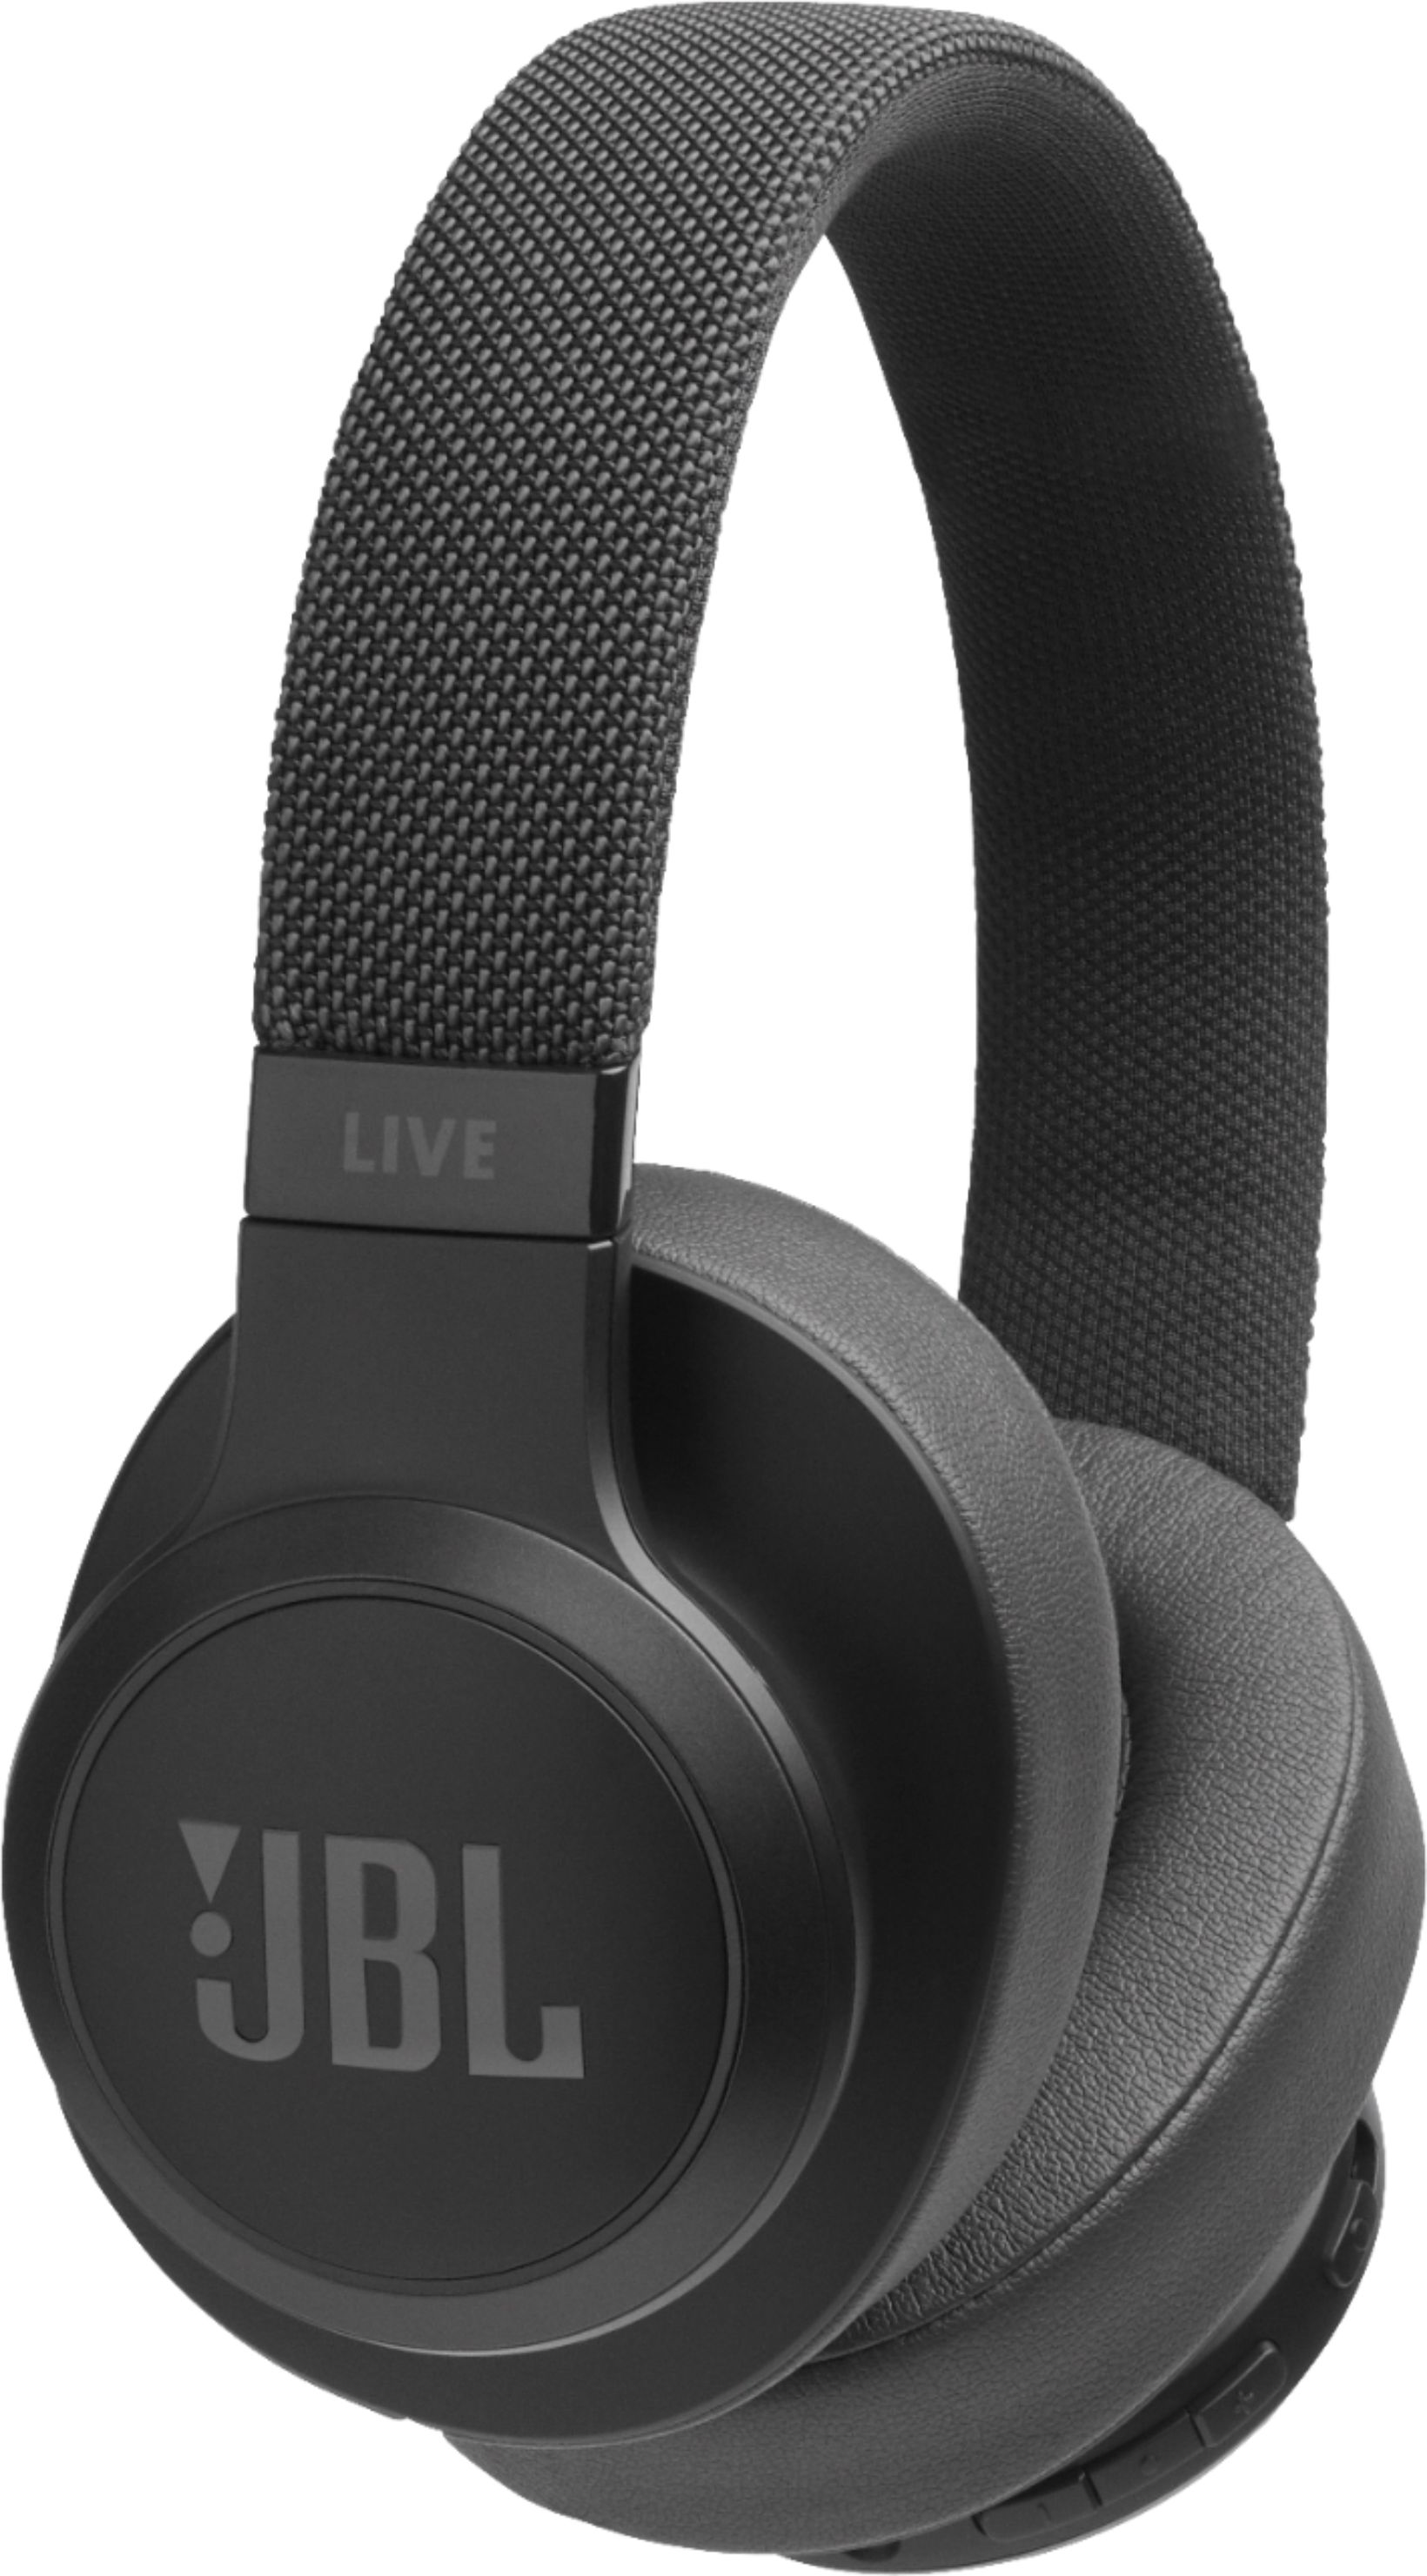 Jbl Live 500bt Wireless Over The Ear Headphones Black Jbllive500btblkam Best Buy